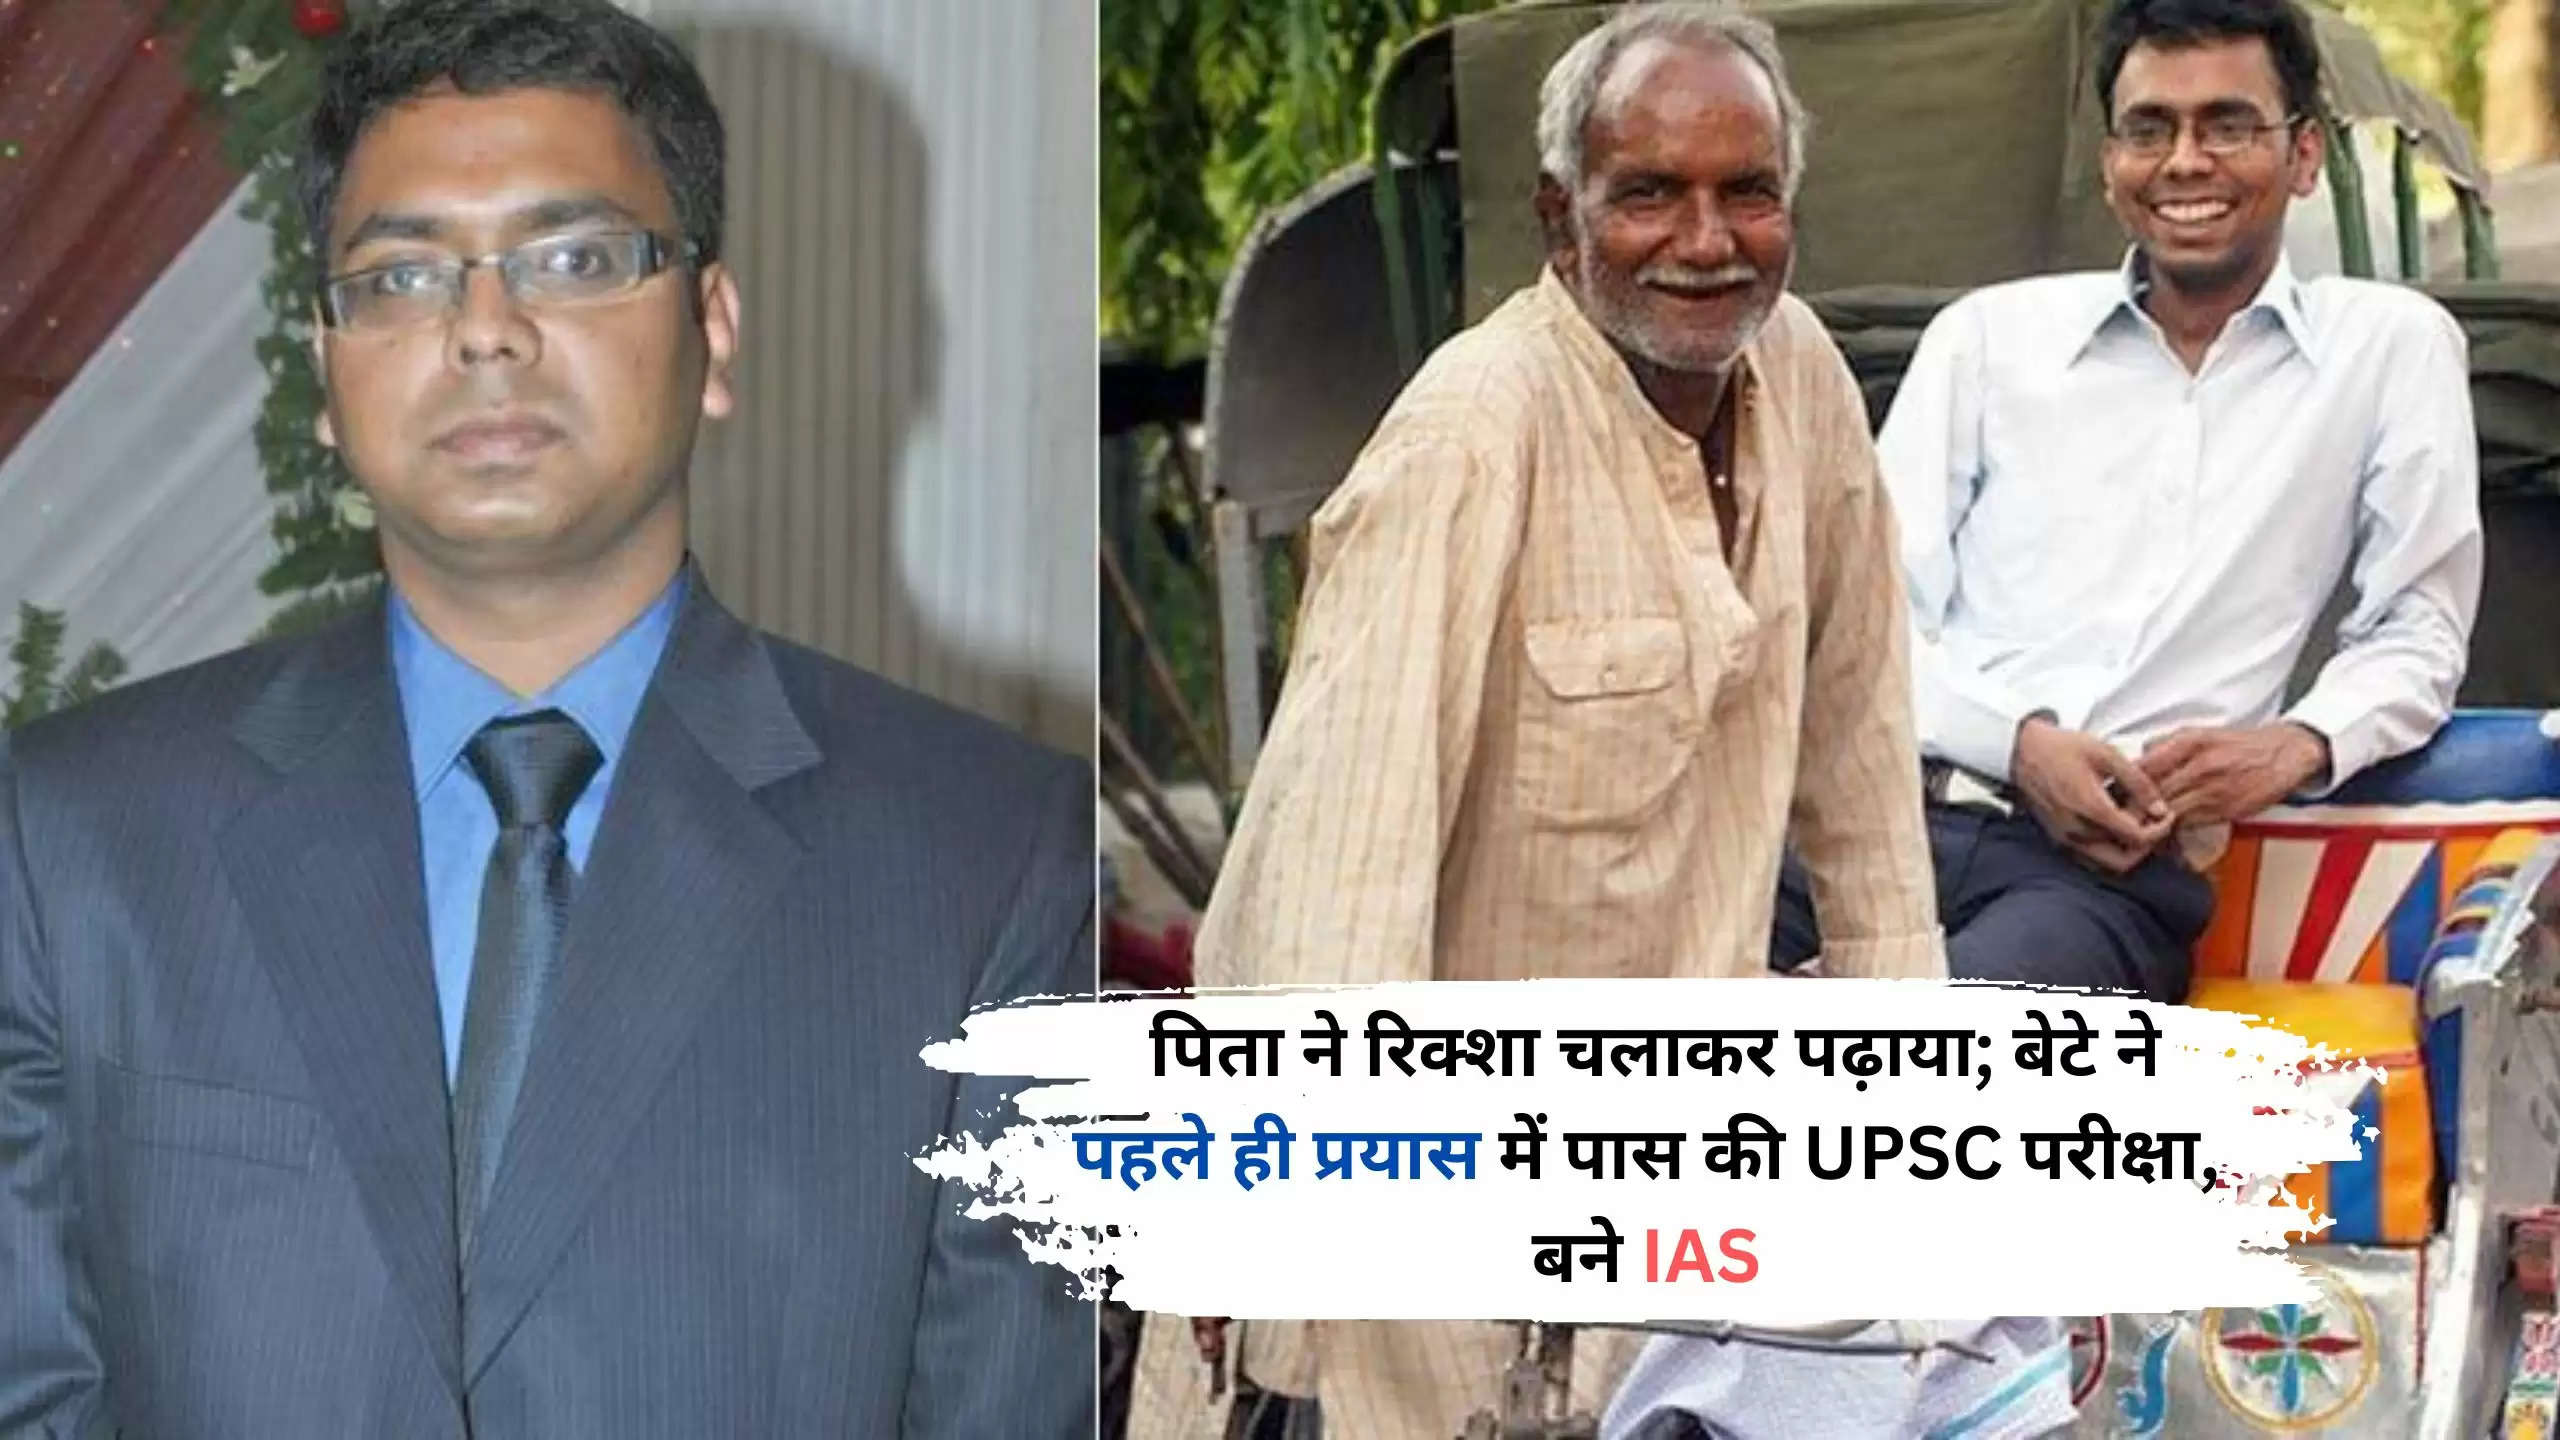  पिता ने रिक्शा चलाकर पढ़ाया; बेटे ने पहले ही प्रयास में पास की UPSC परीक्षा, बने IAS